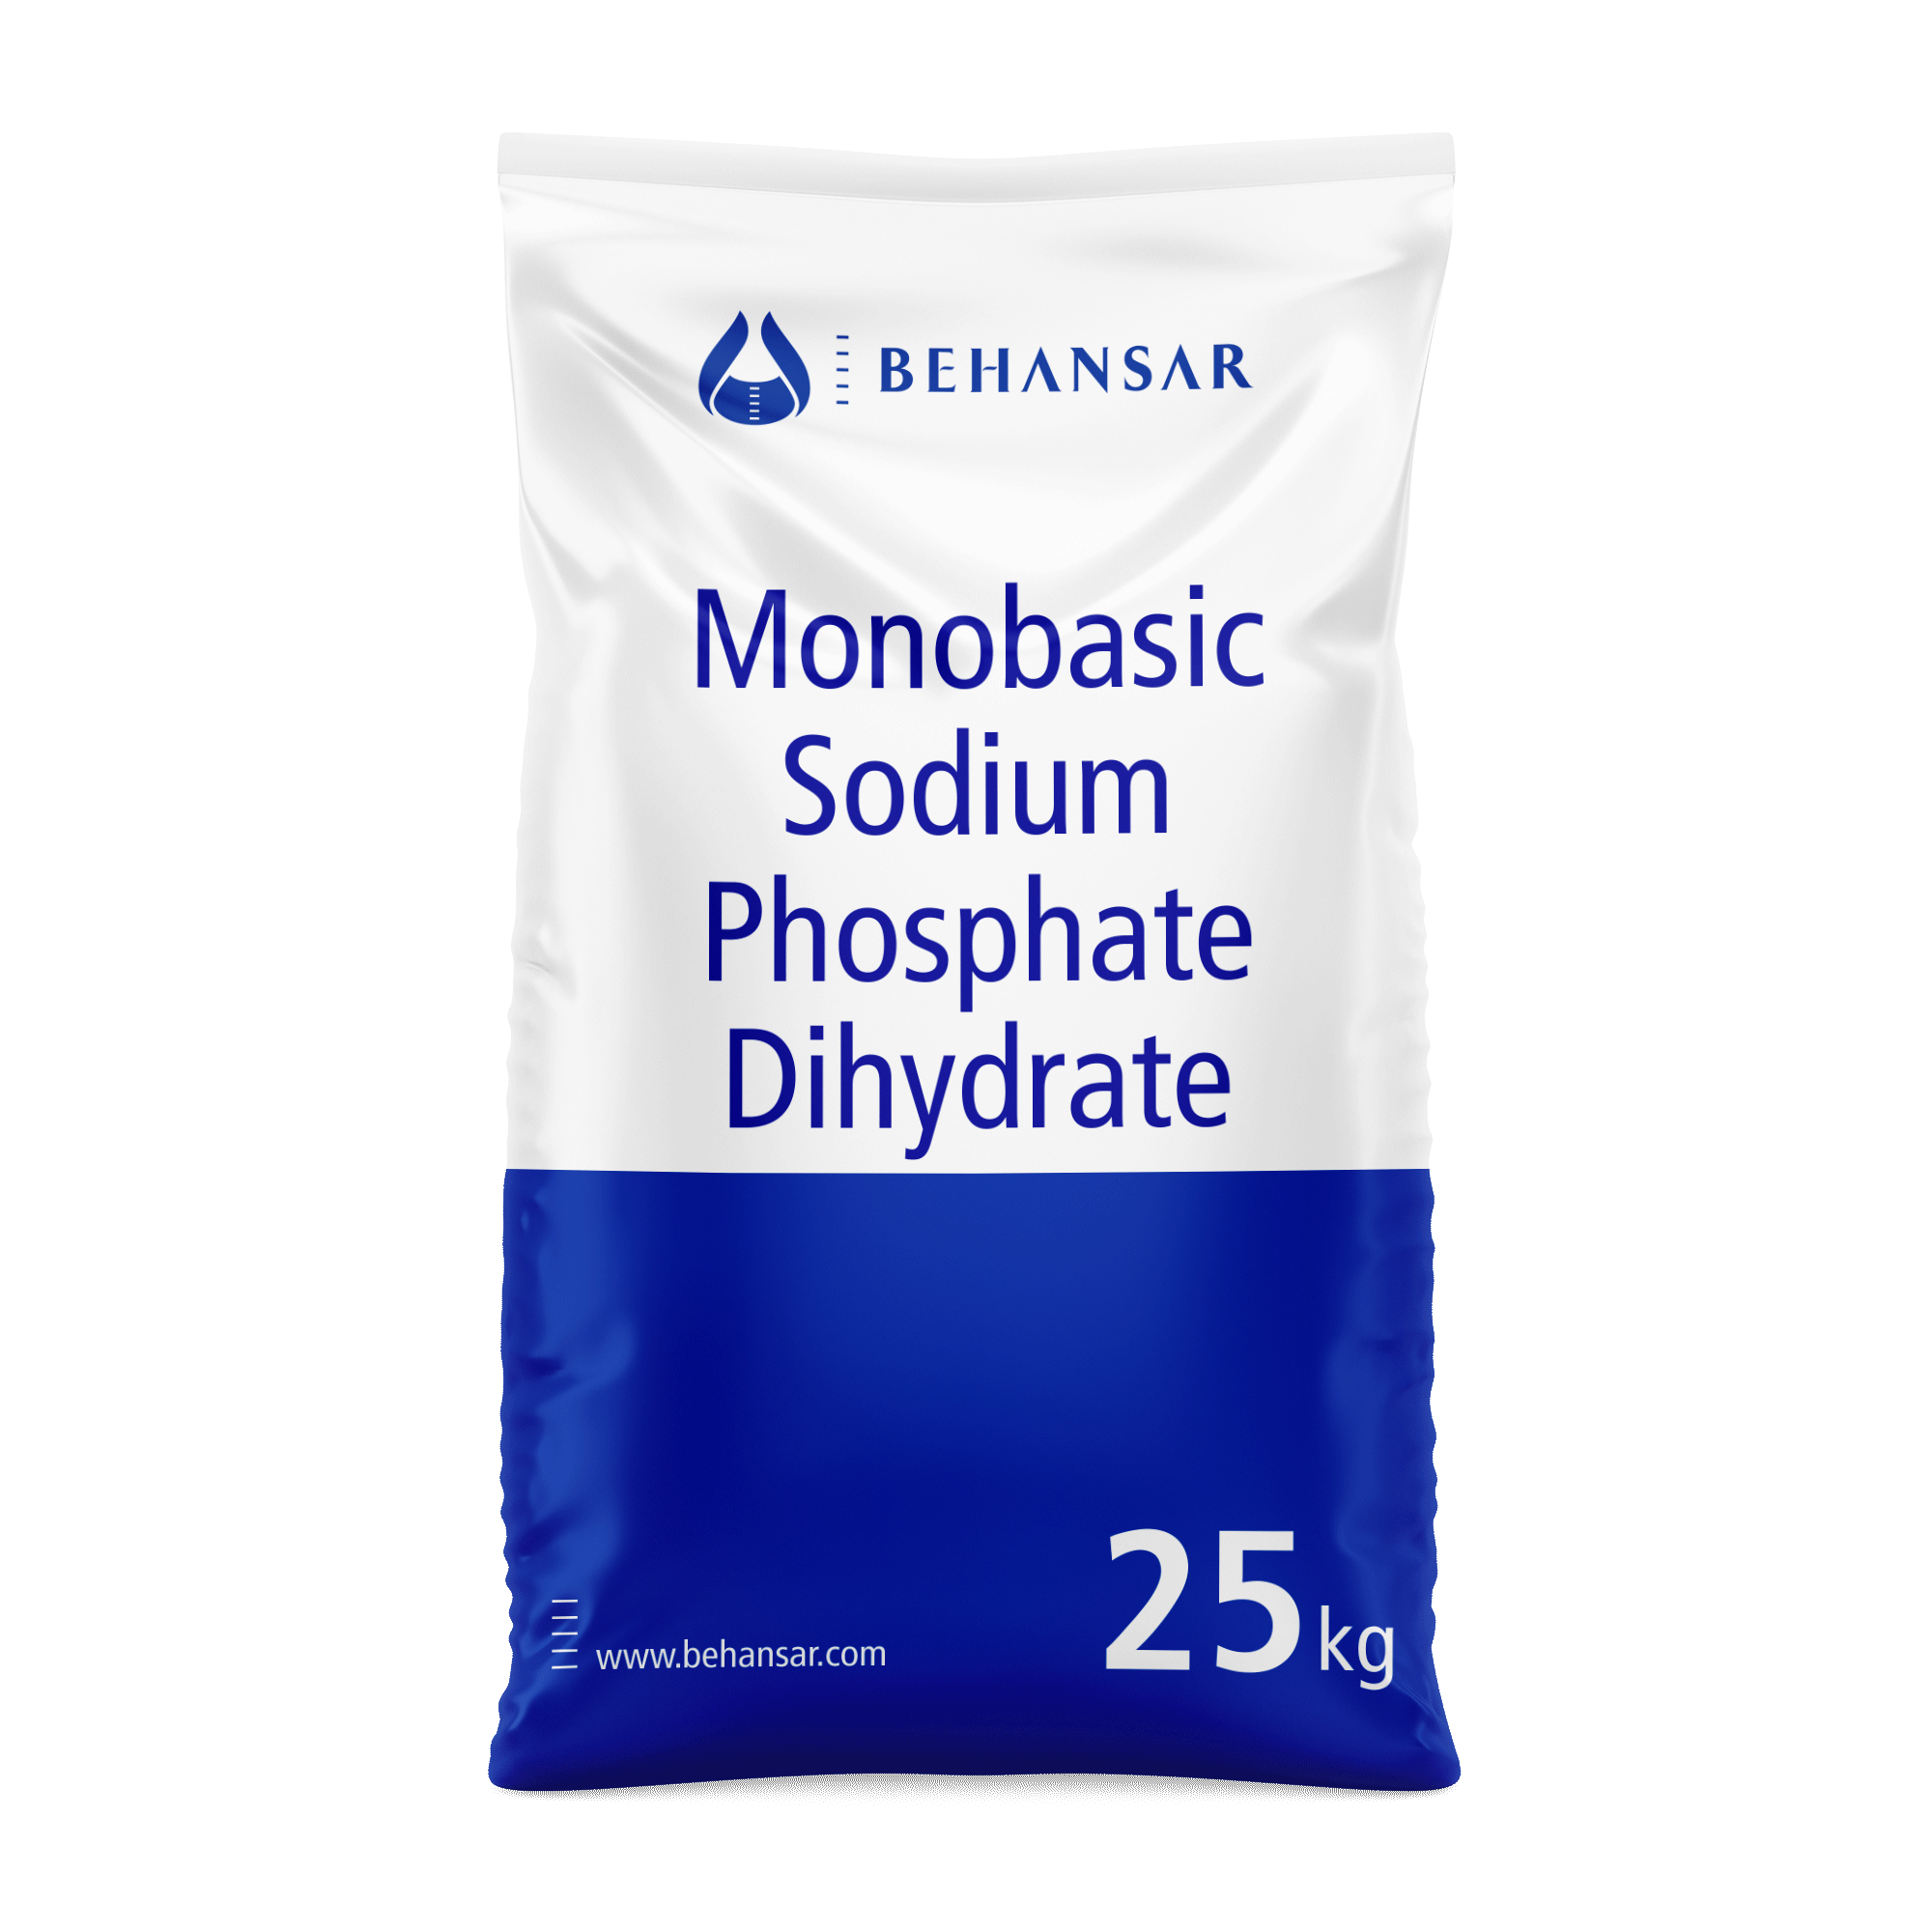 سدیم فسفات مونوبازیک دی هیدرات یکی از تولیدات شرکت بهانسار است